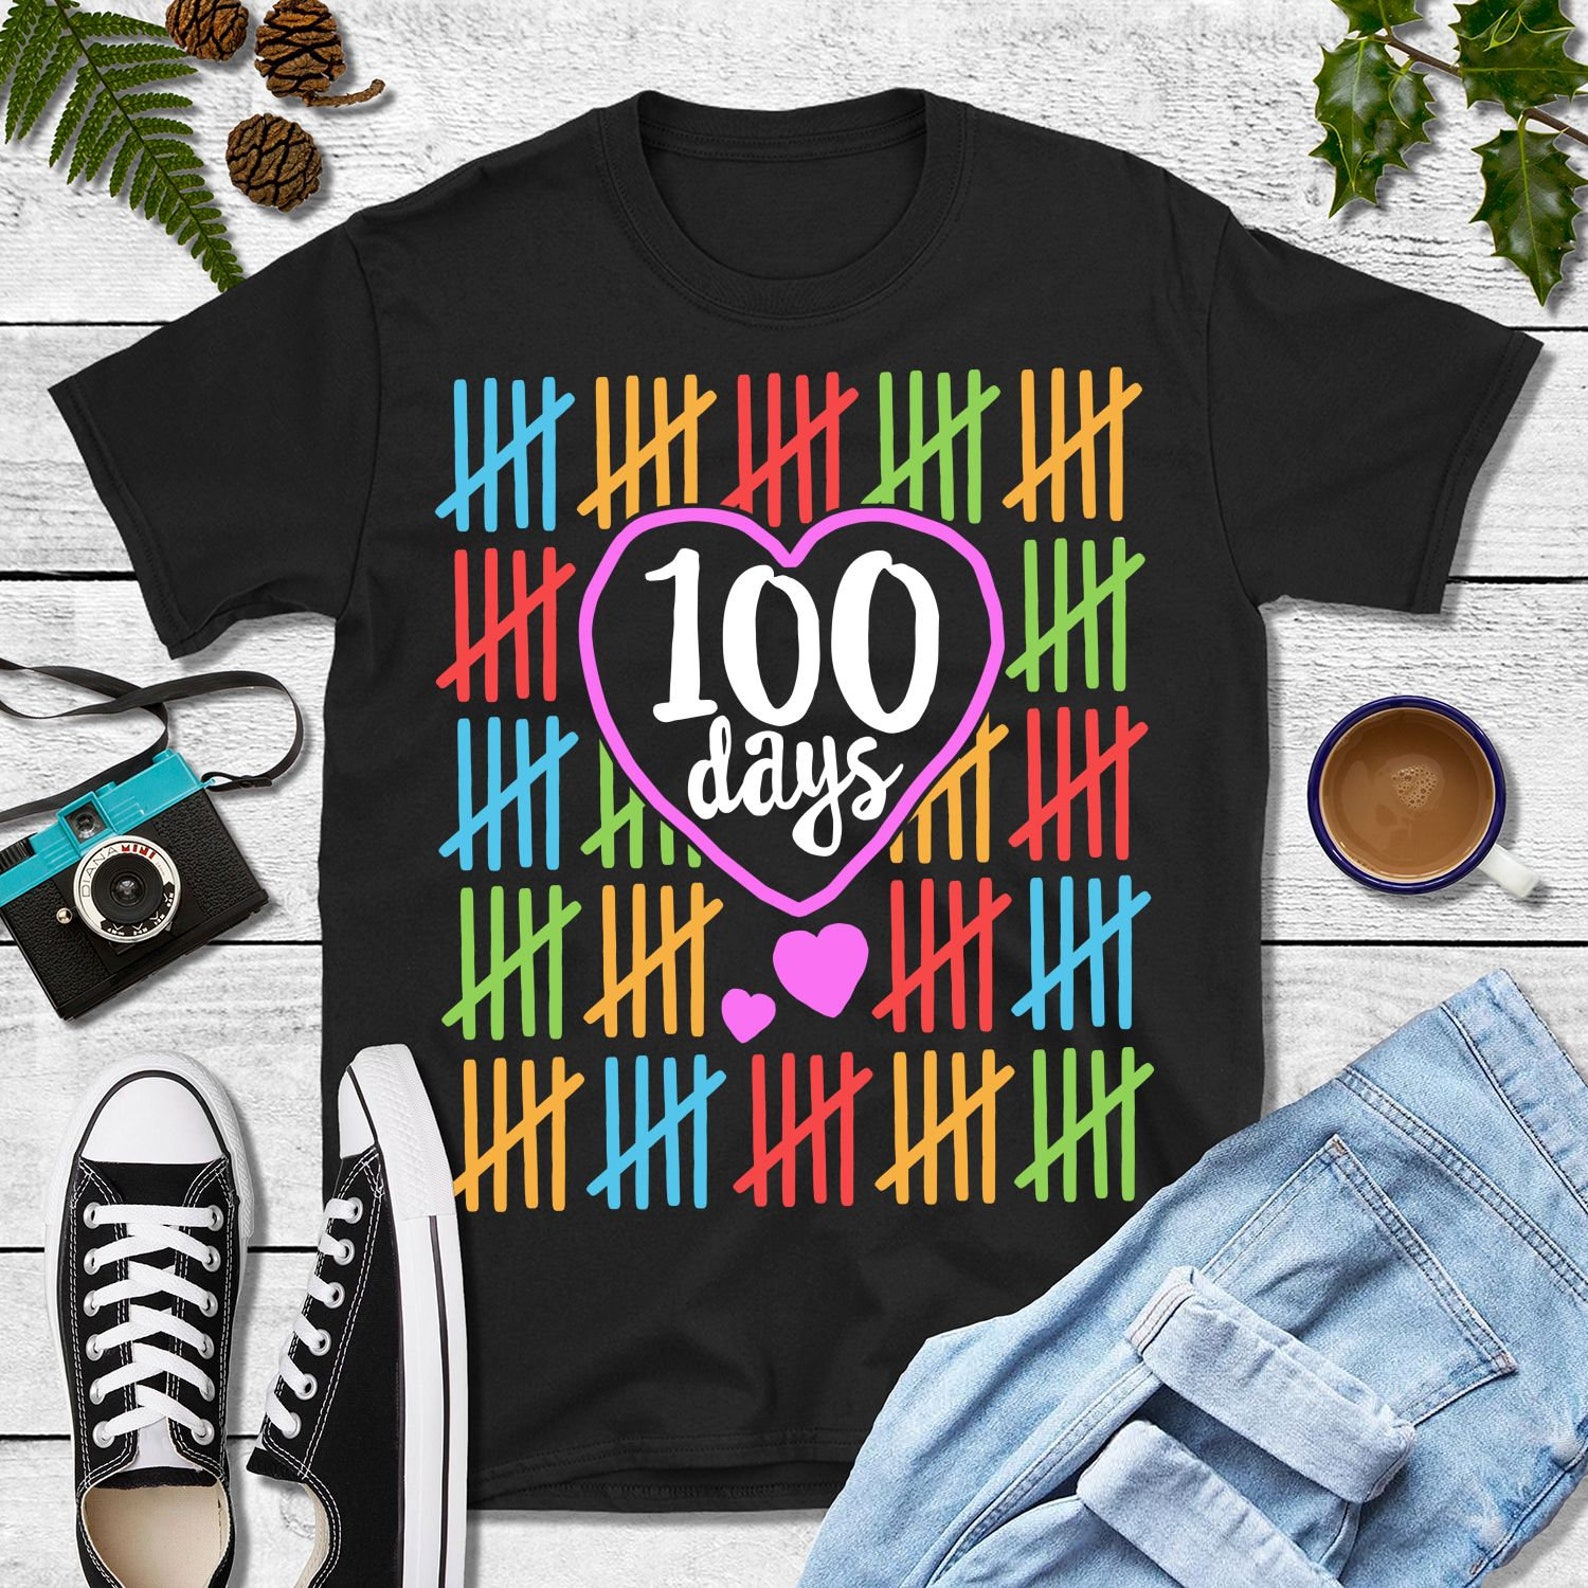 100 Days Shirt 100 Days of School Boy School Shirt Boys School - Etsy